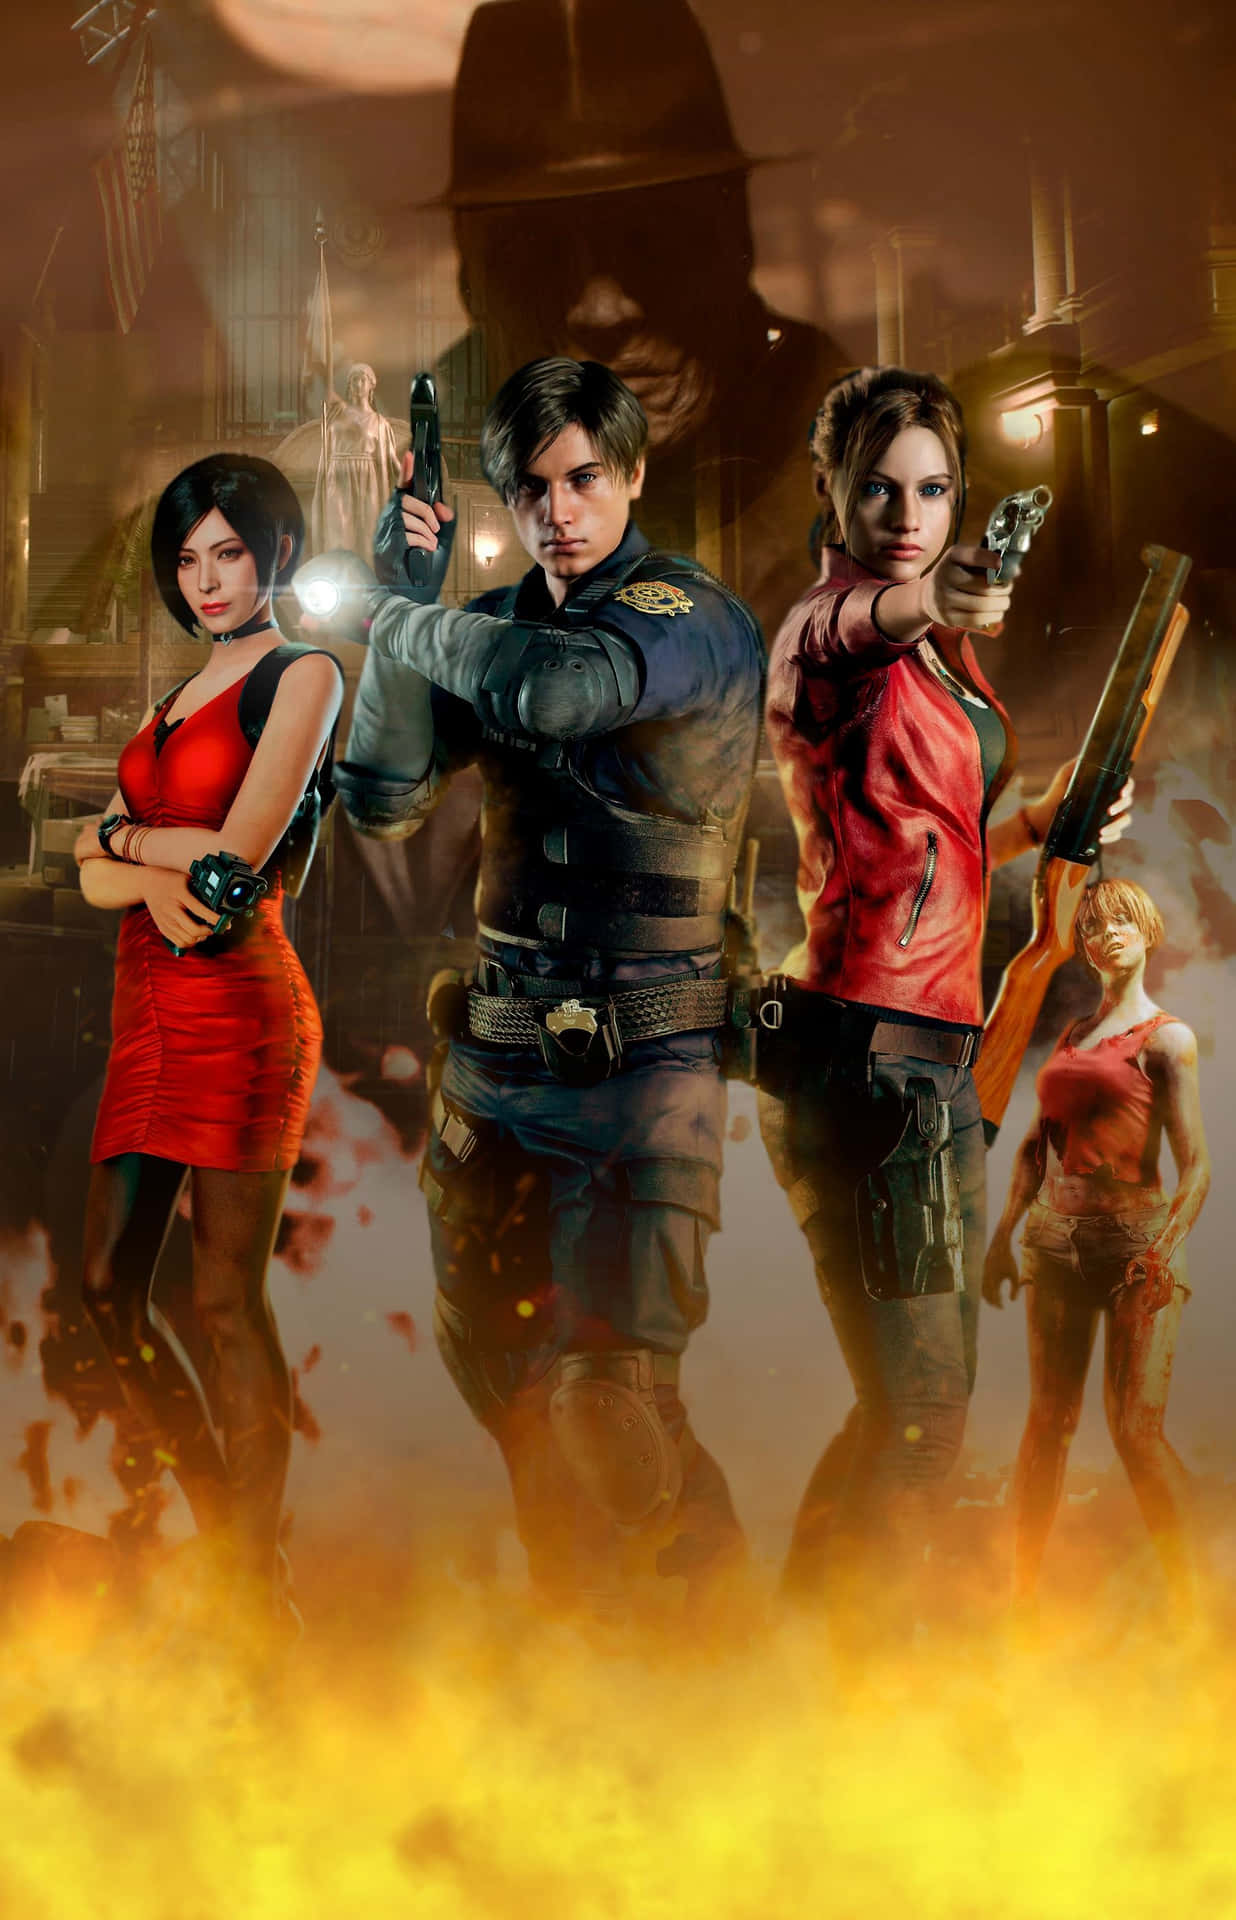 Claire Redfield, hovedpersonen i det horror-overlevelses videospil Resident Evil 2. Wallpaper